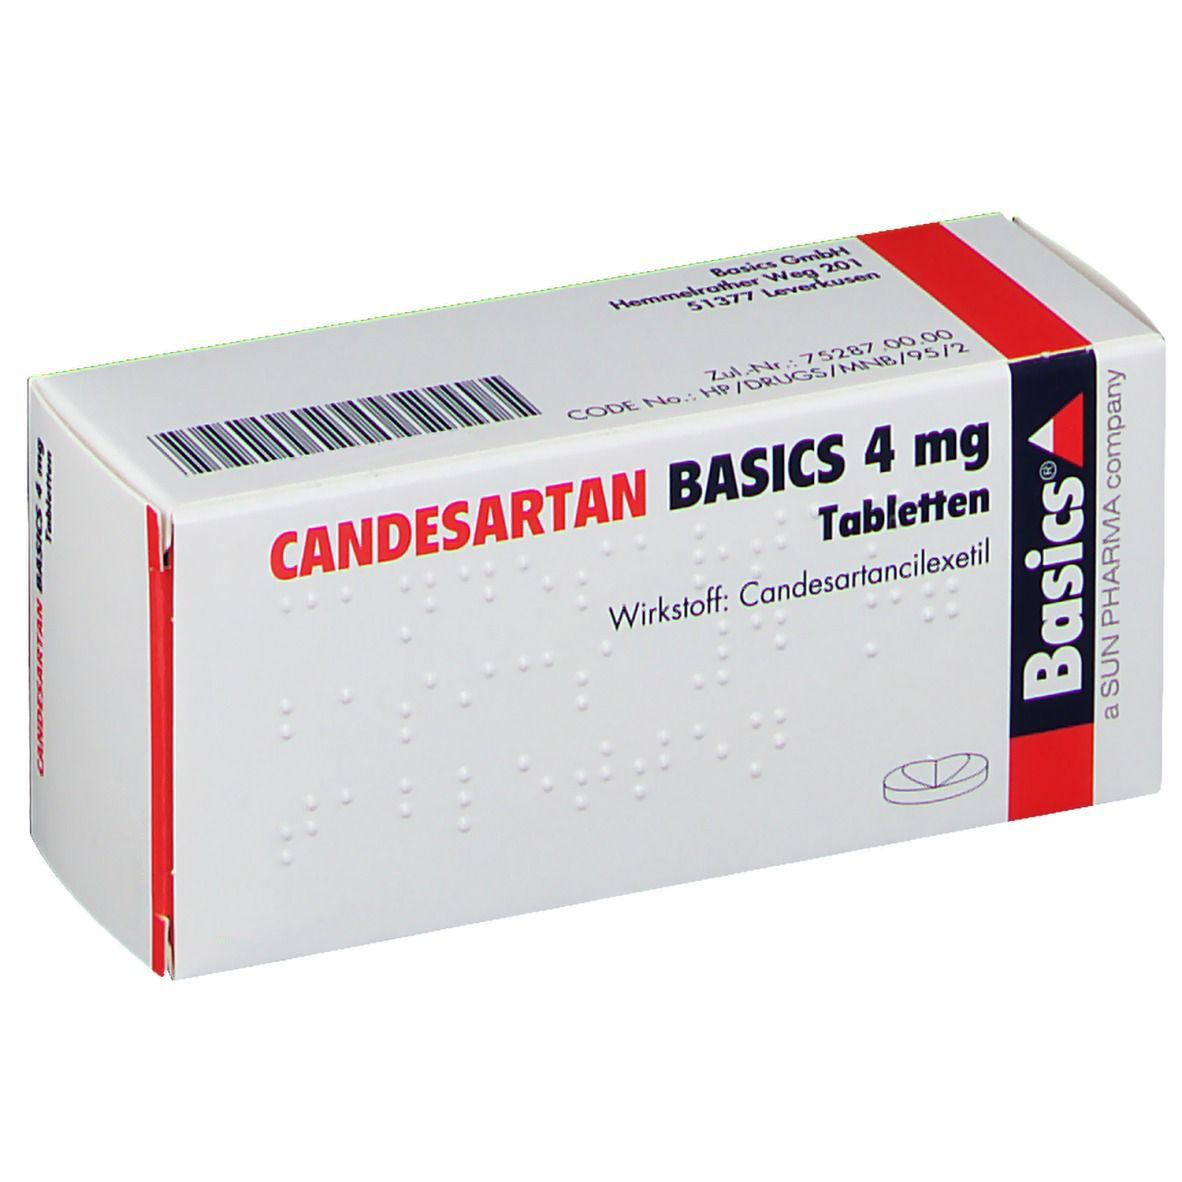 CANDESARTAN BASICS 4 mg